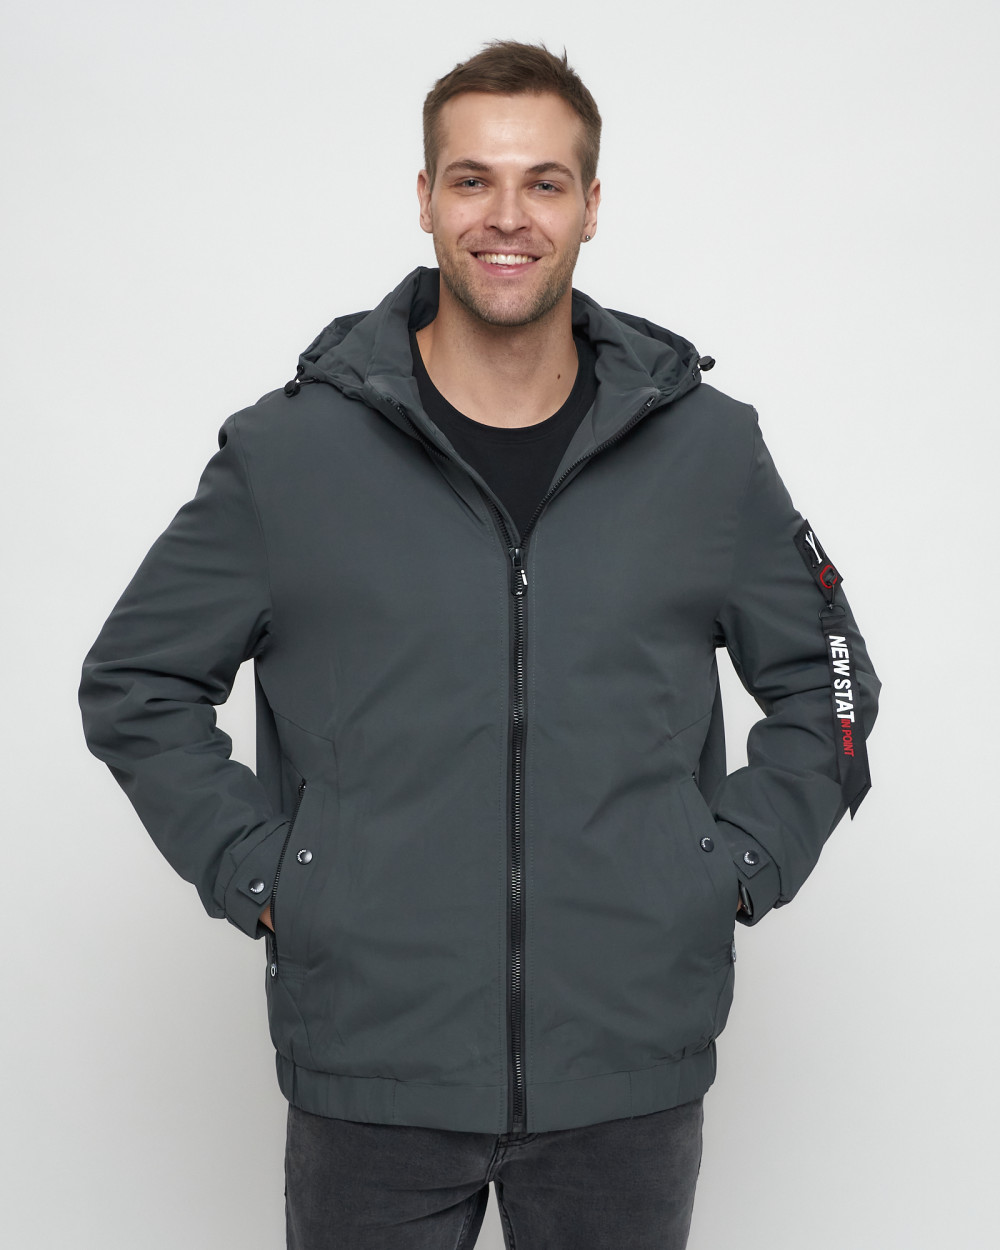 Купить куртку мужскую большого размера оптом от производителя недорого в Москве 8816TS 1